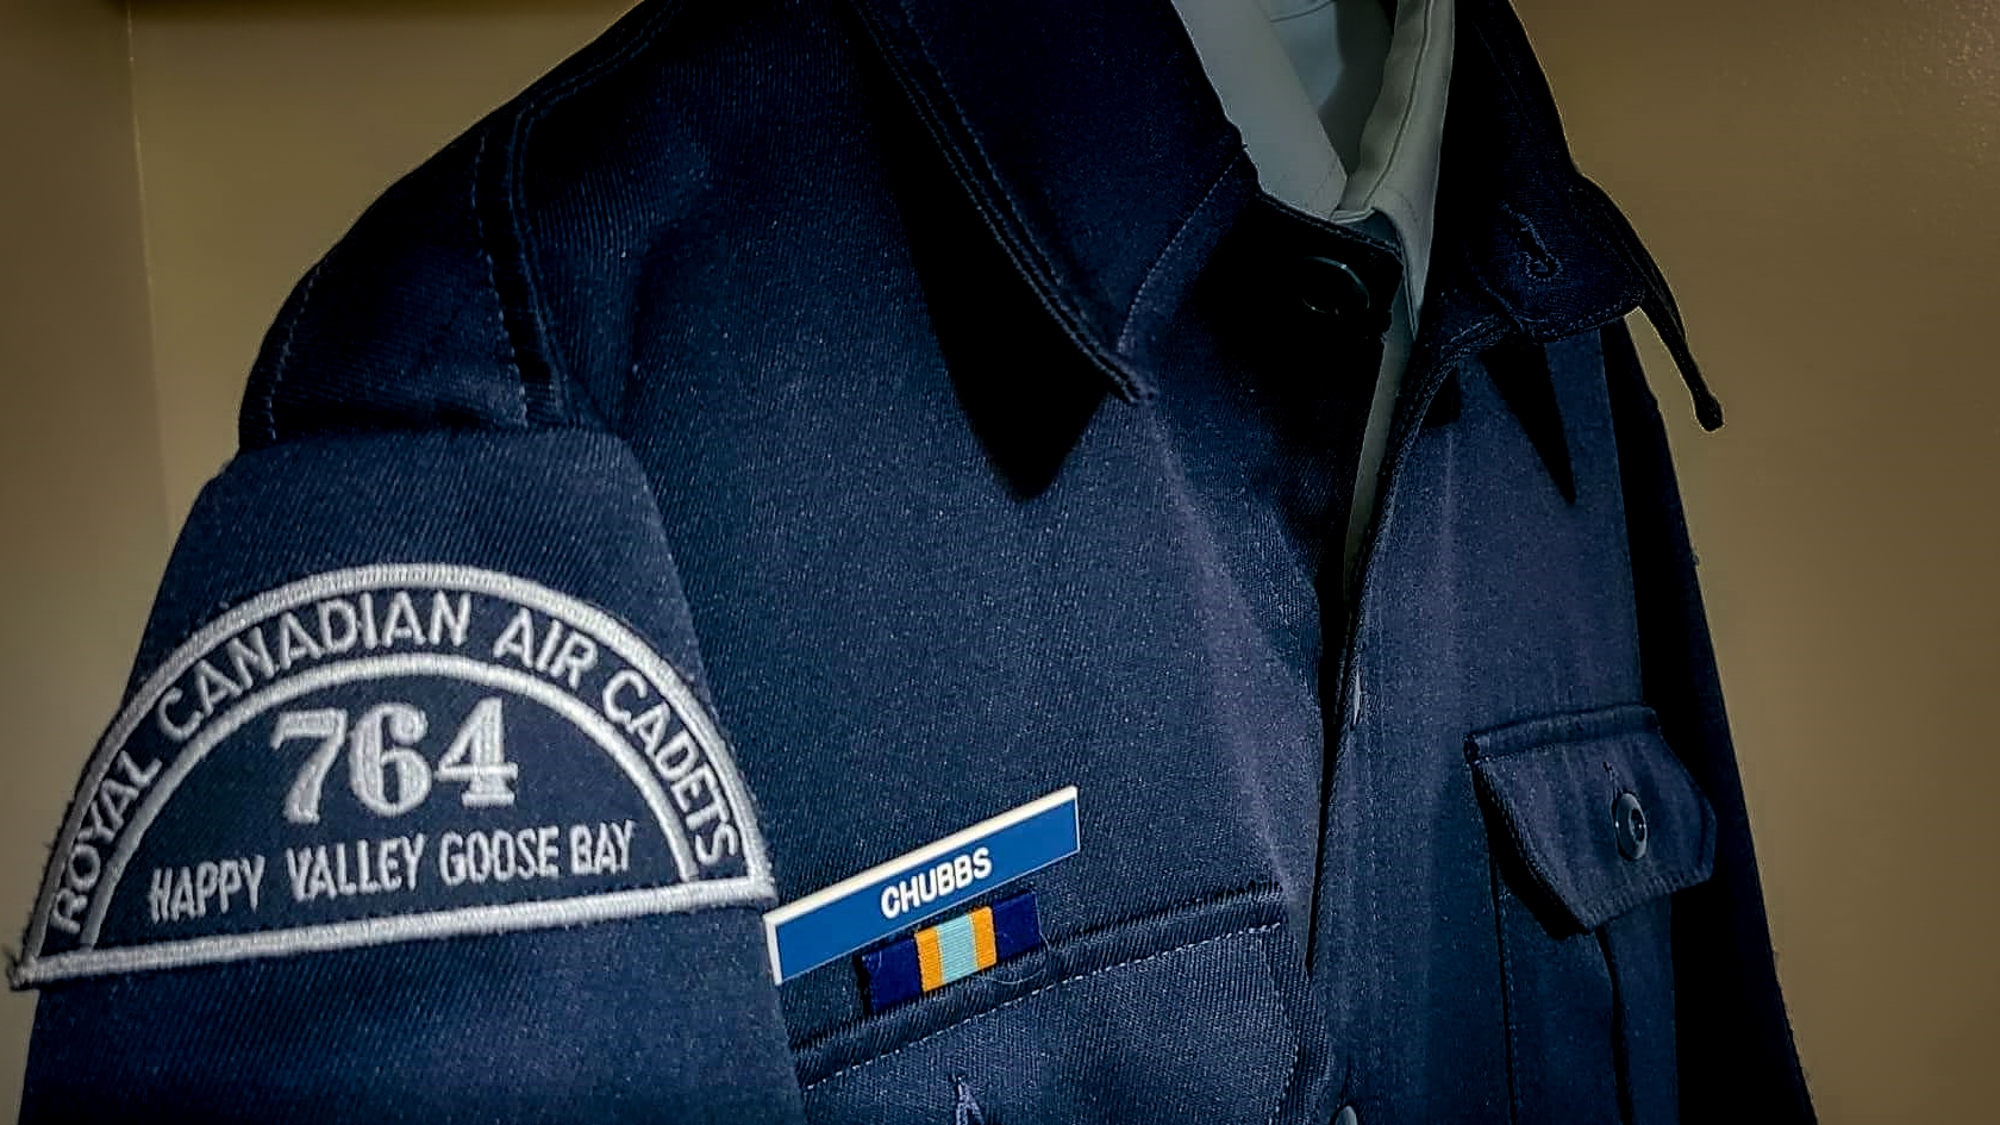 An unused air cadet uniform hangs in a closet.